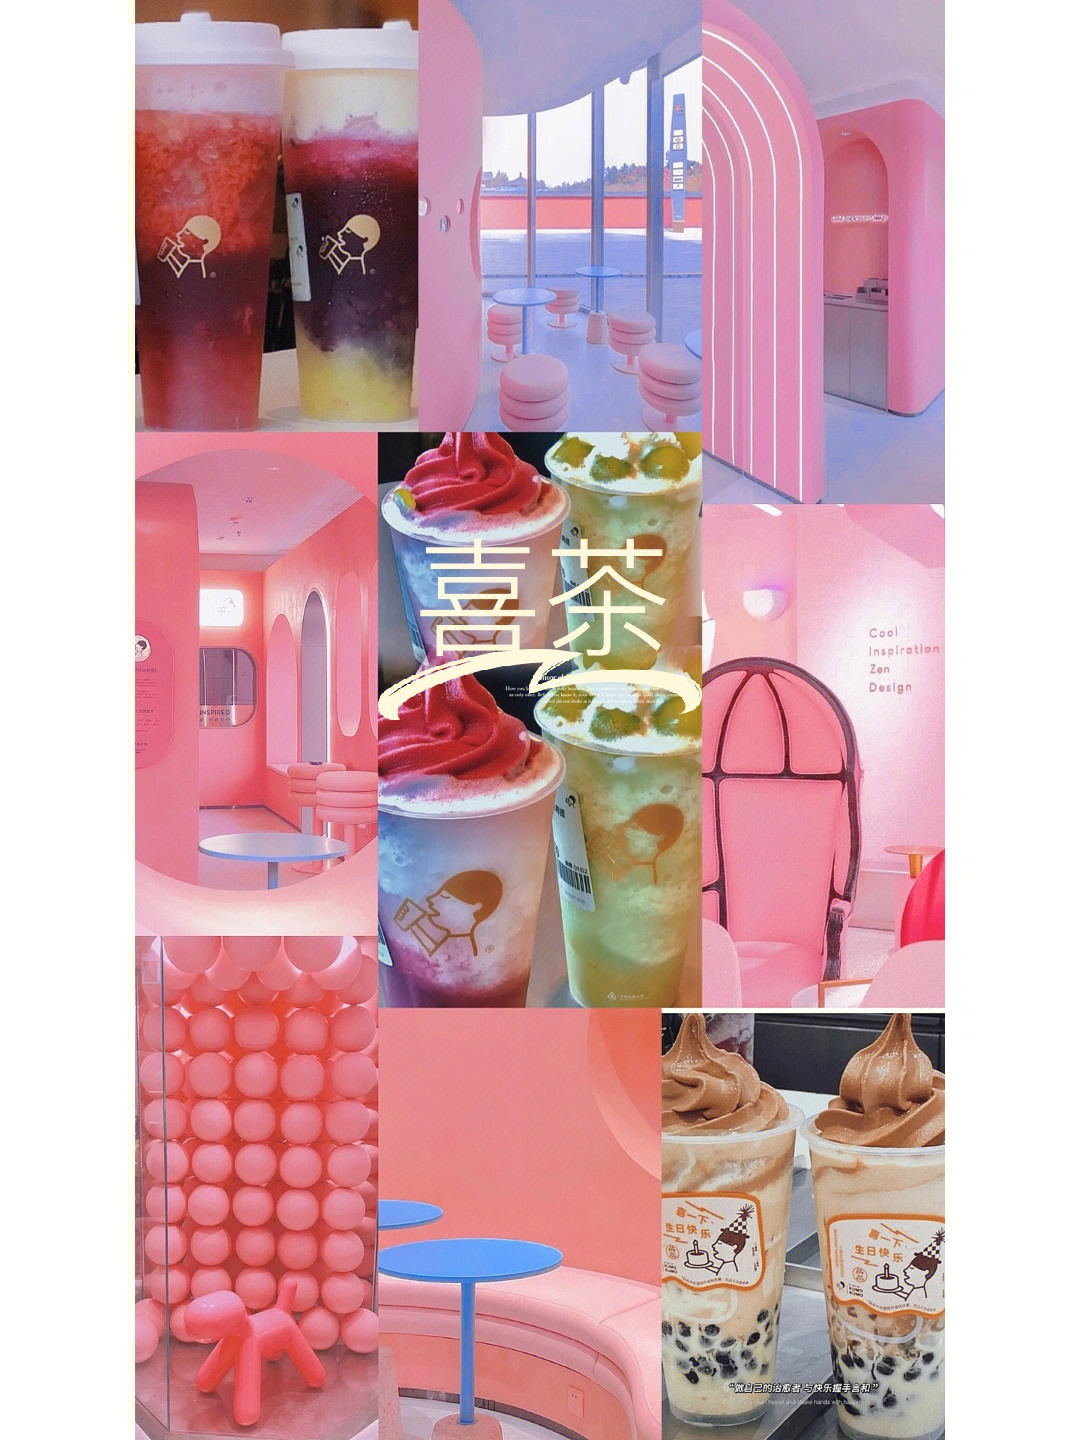 喜茶:pink店04喜茶pink店火遍全网,整个店铺都是主打的粉色系列